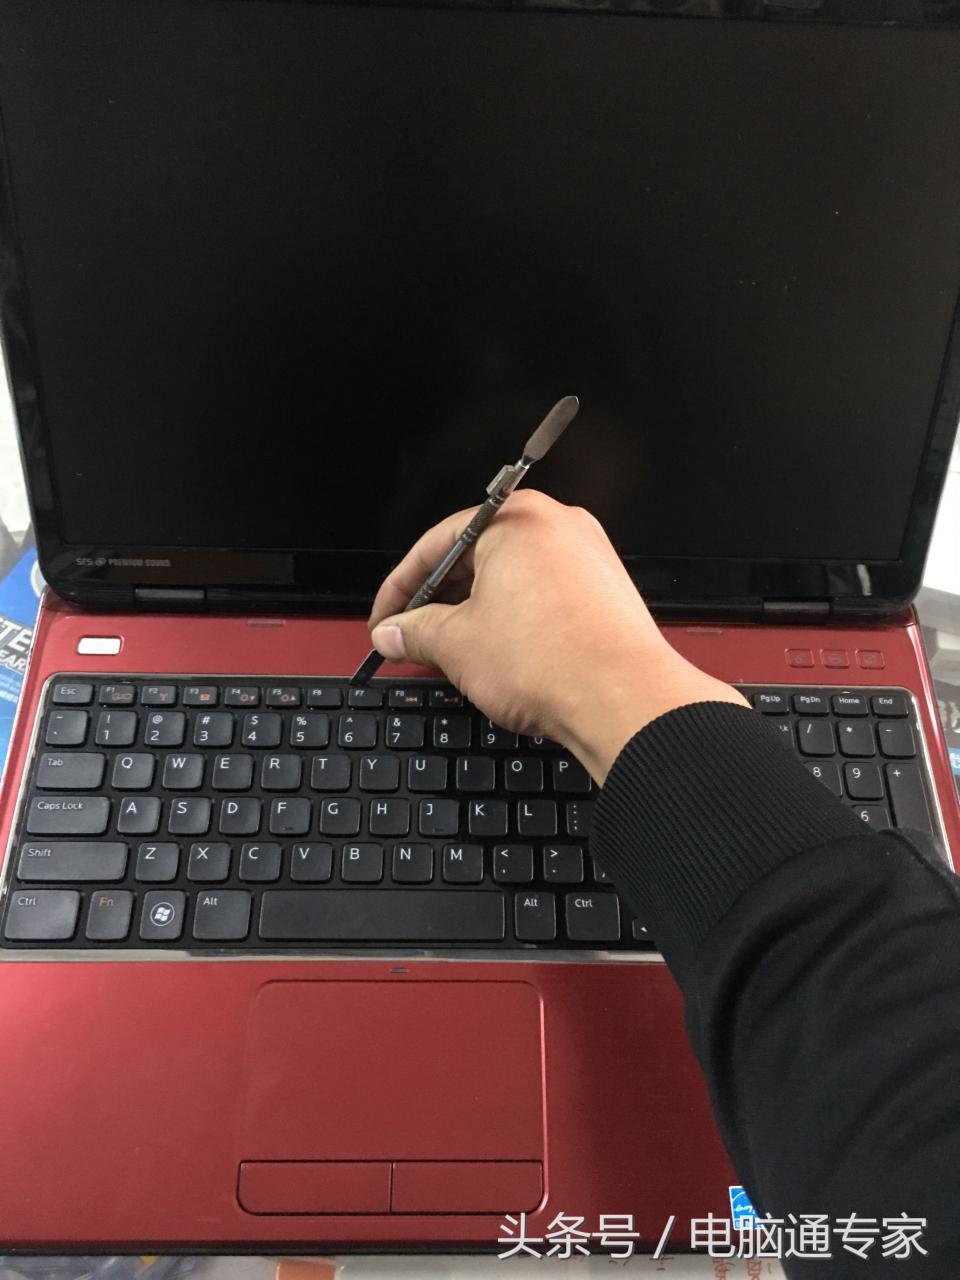 笔记本电脑键盘坏了自己修、自己换，自己动手丰衣足食！